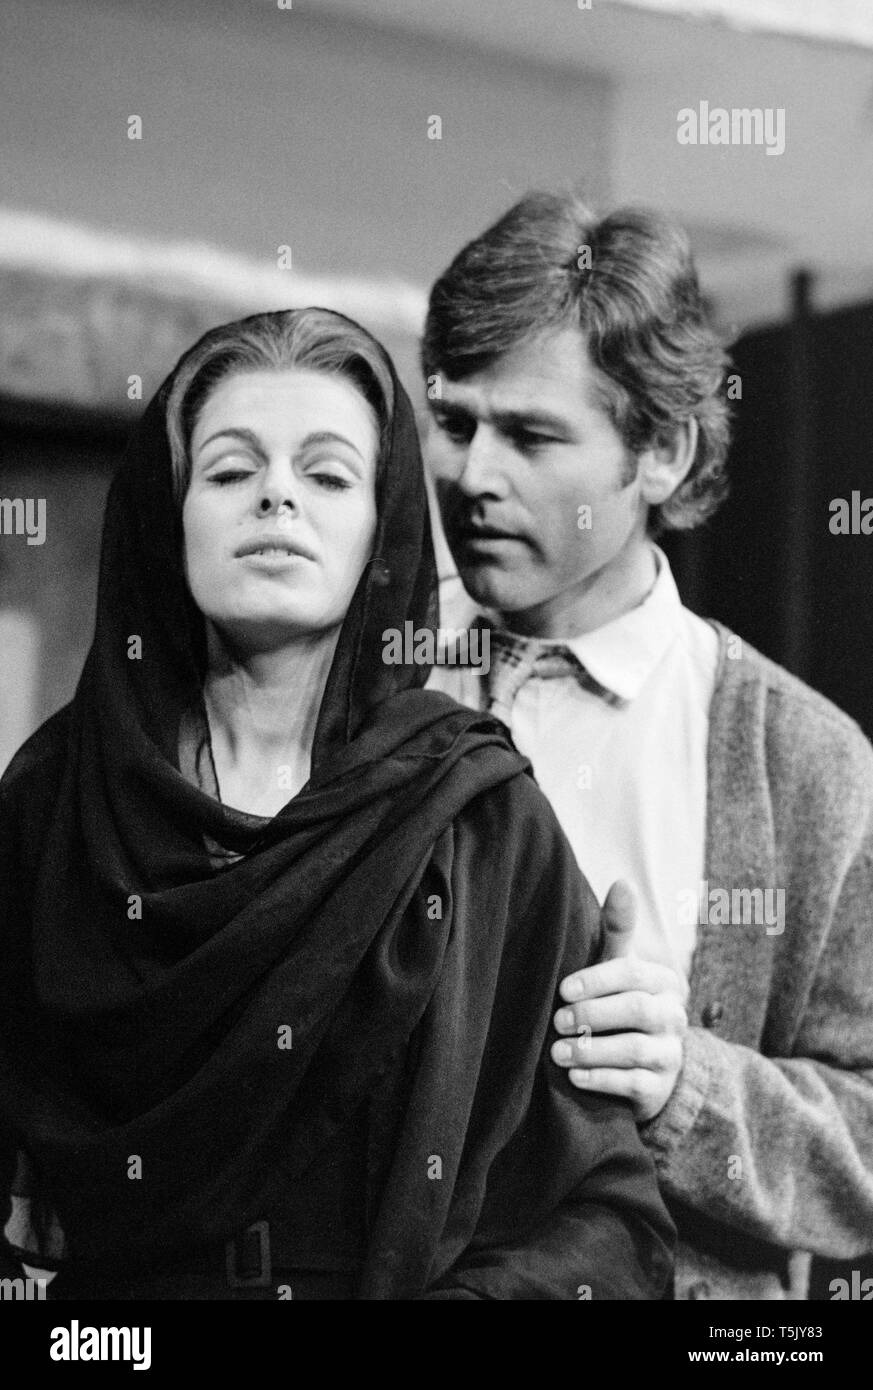 L'acteur écossais Jim Smilie et actrice anglaise Angela Richards, sur scène pendant les répétitions pour la pièce de Zorba au Greenwich Theatre, Londres, en novembre 1973. Smilie jouait le rôle de Nikos, et Richards a été dans le rôle de la veuve. Banque D'Images